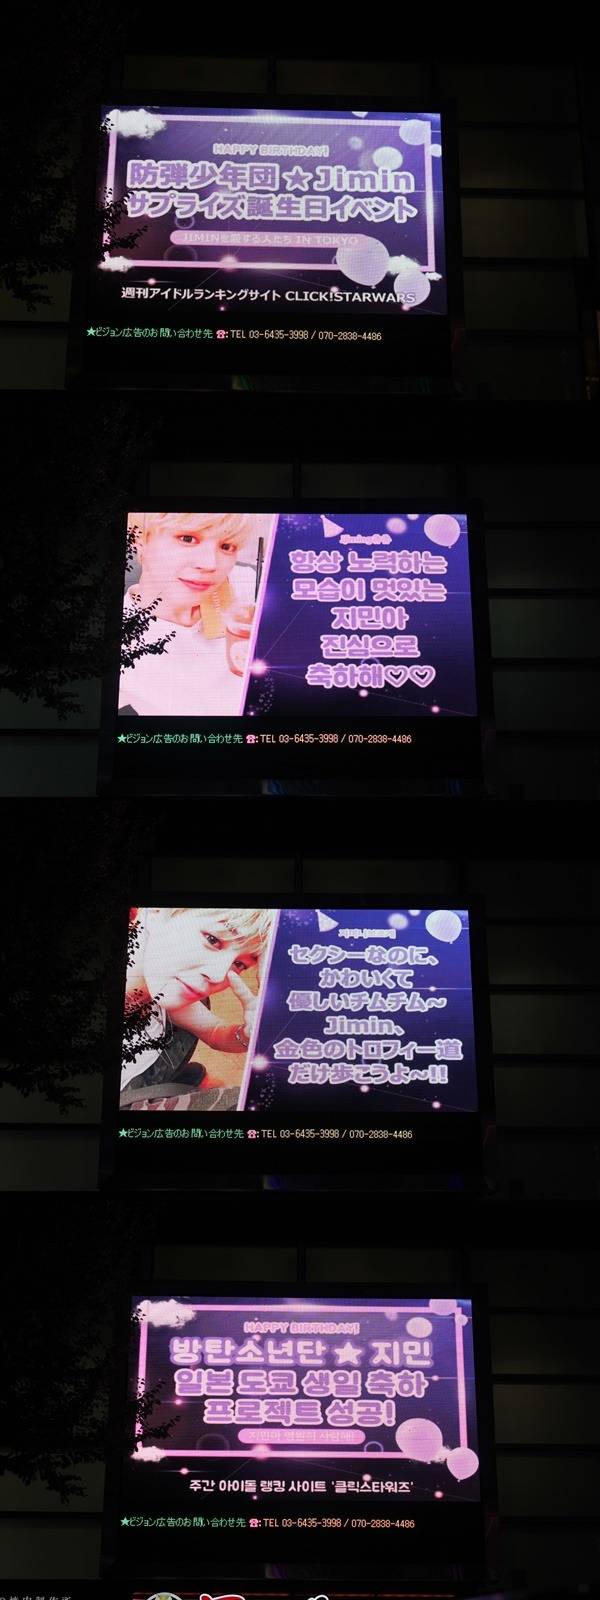 지민아, 생일 축하해 그룹 방탄소년단 팬들이 지민의 생일을 맞아 전광판 광고를 꾸몄다. /클릭스타워즈 제공